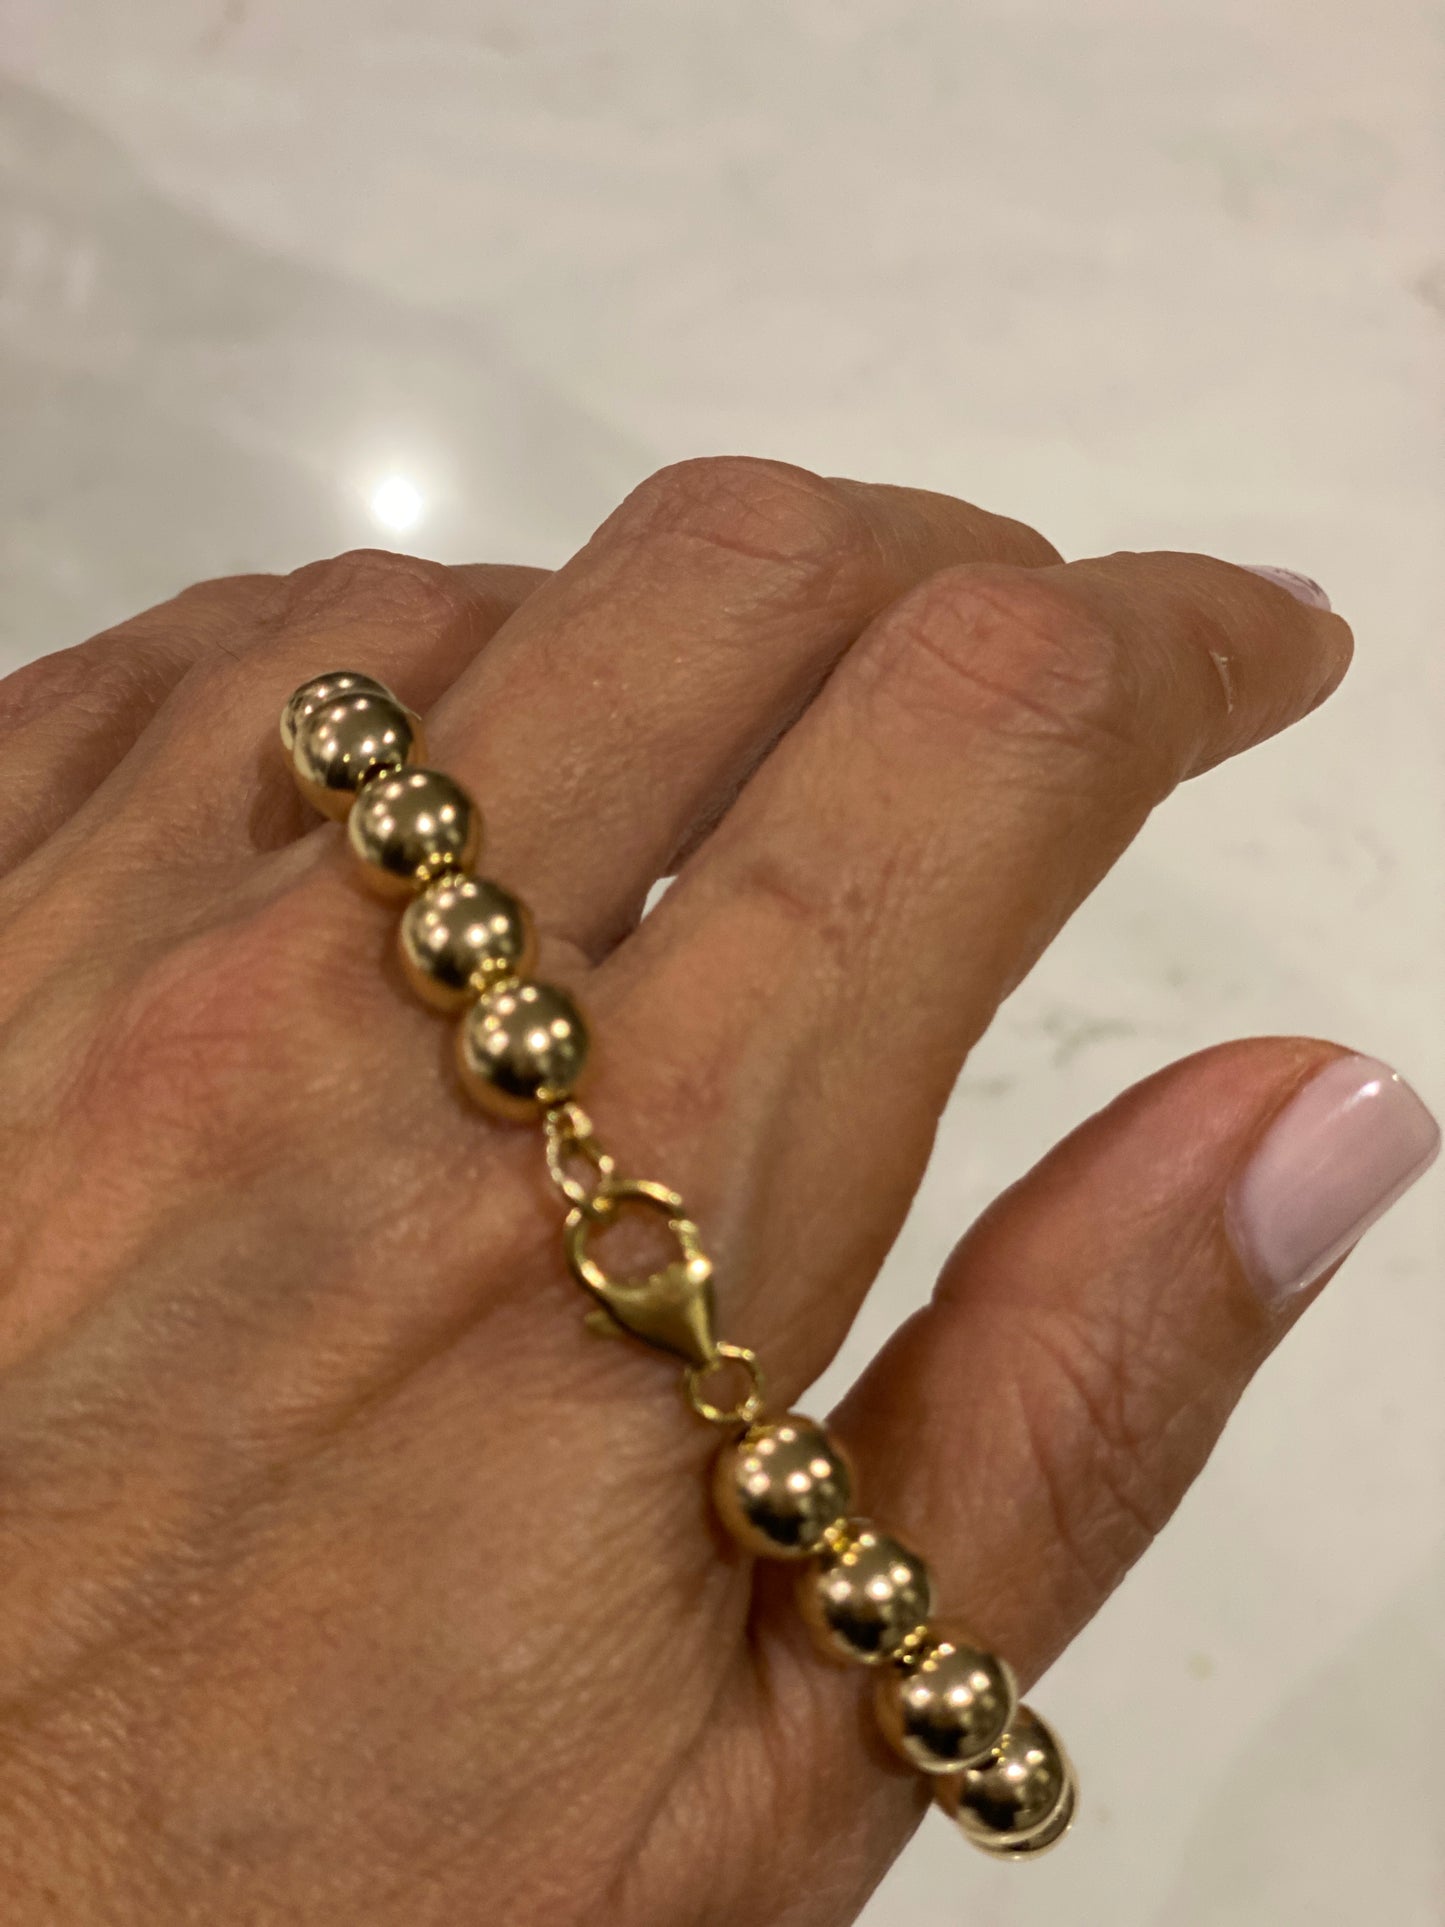 Palermo Boule bracelet 8mm in 14KT Gold filled